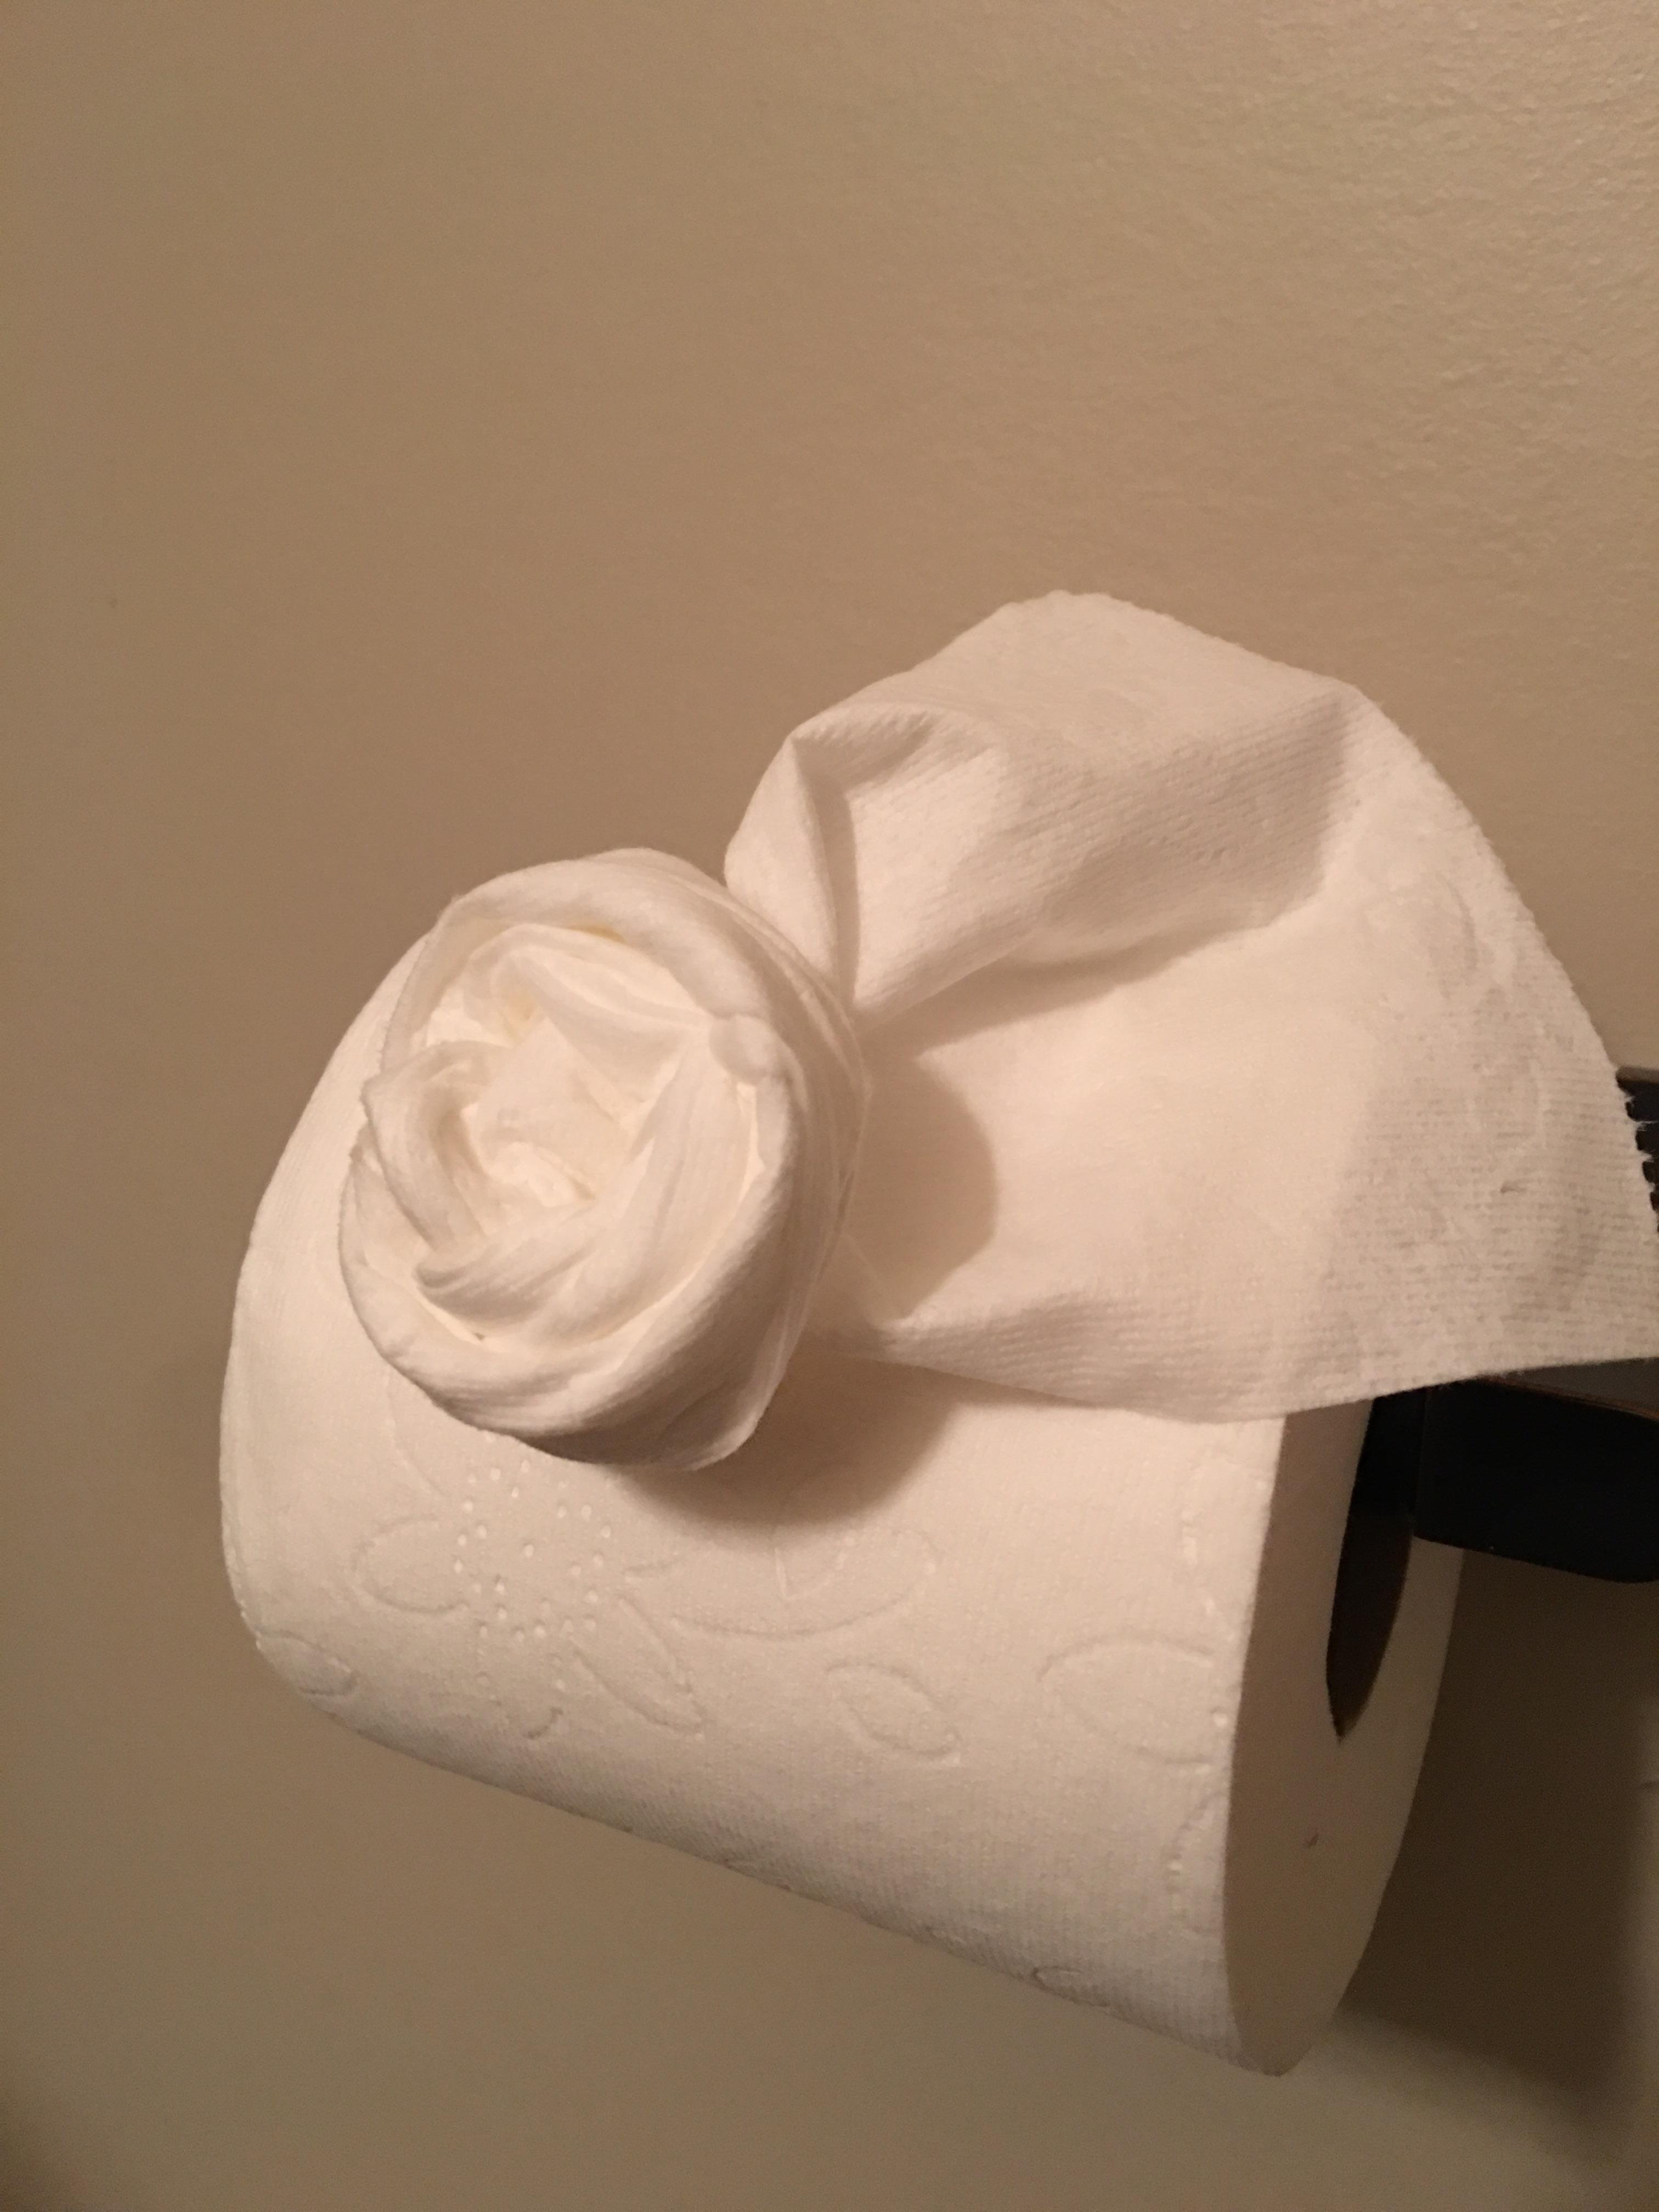 День рождения туалетной бумаги. Цветы из туалетной бумаги. Розы из туалетной бумаги. Поделки из туалетной бумаги цветы. Рочки из туалетной бумаги.